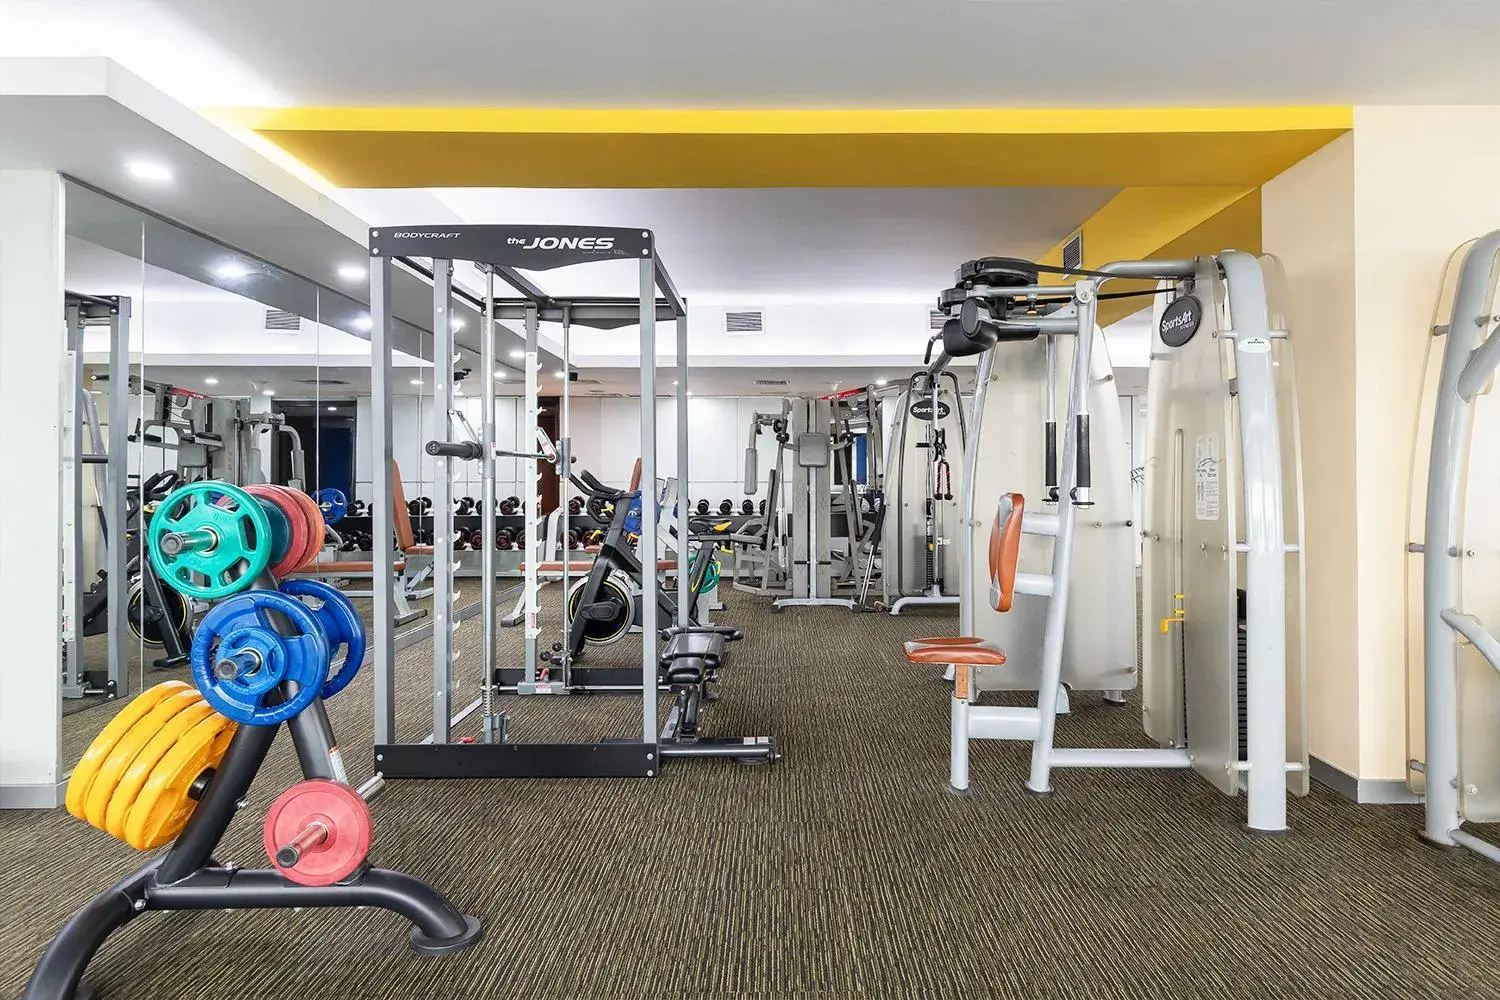 Fitness centre/facilities, Fitness Center/Facilities in Dhaka Regency Hotel & Resort